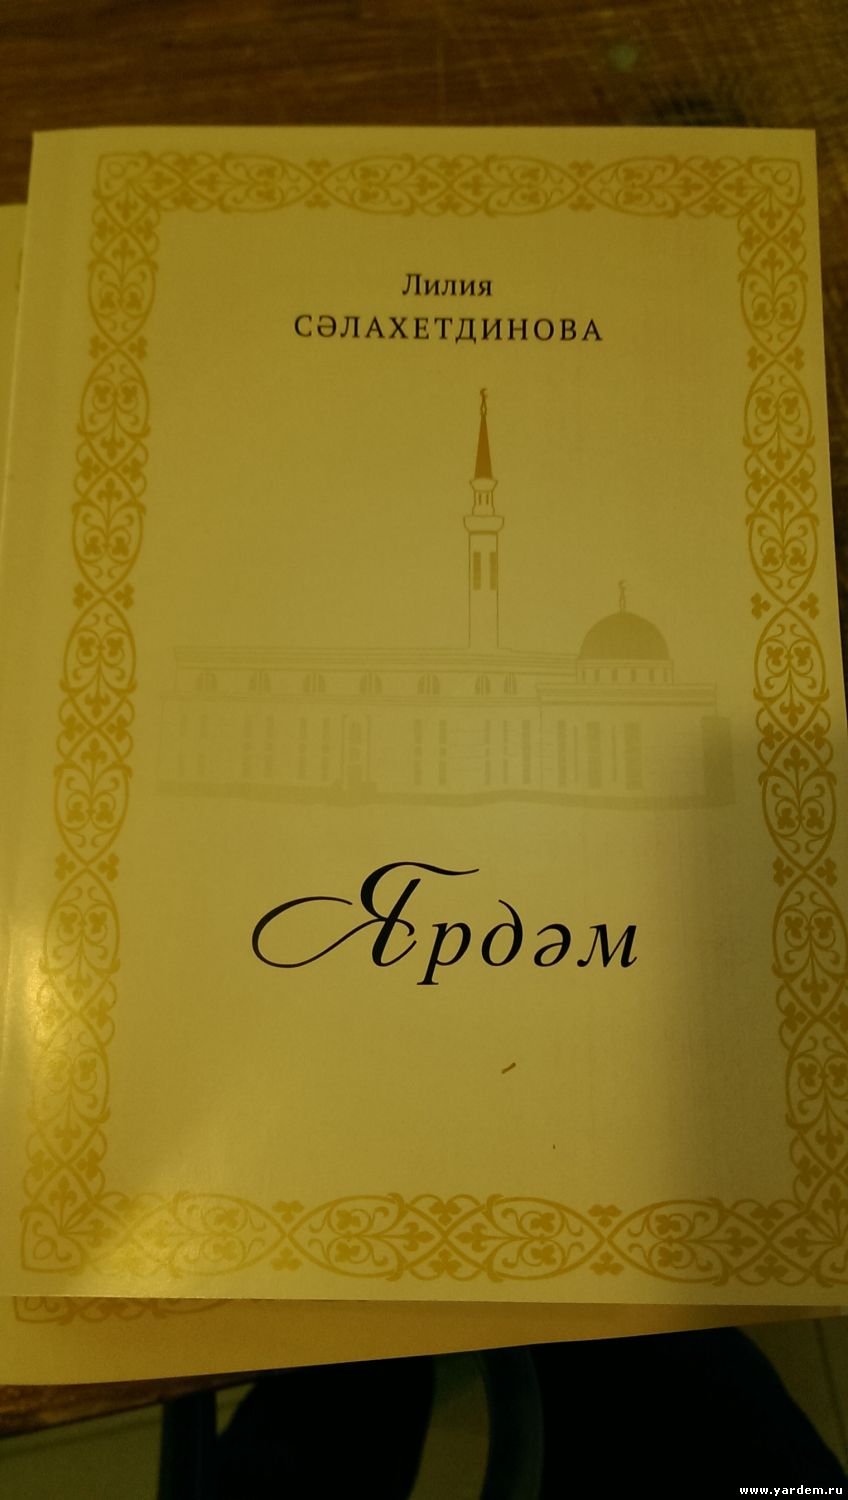 В мечети "Ярдэм" состоится презентация книги "Ярдэм" Лилии Салахутдиновой